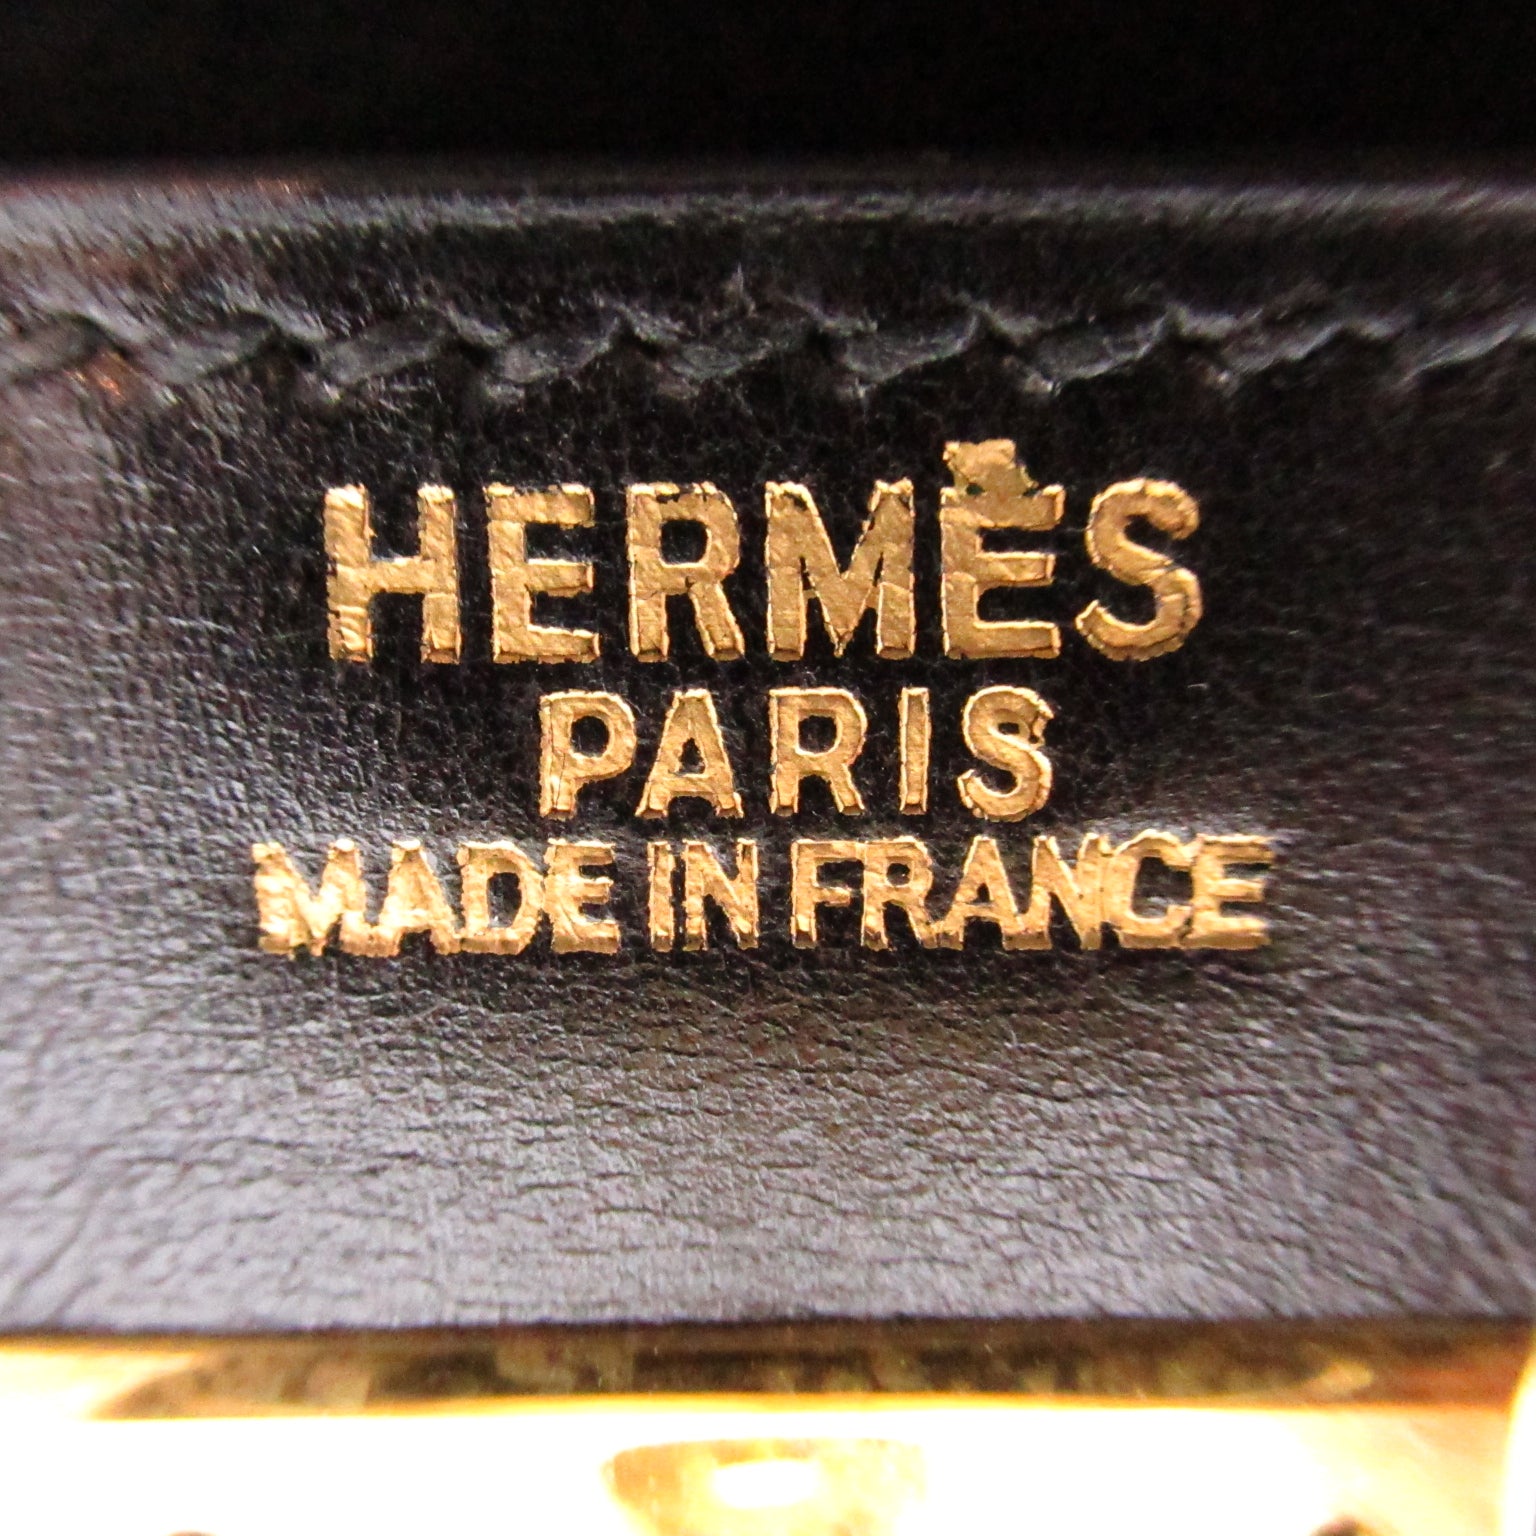 Hermes Kelly 32 Black Handbag  Box Carf  Black Box Carf